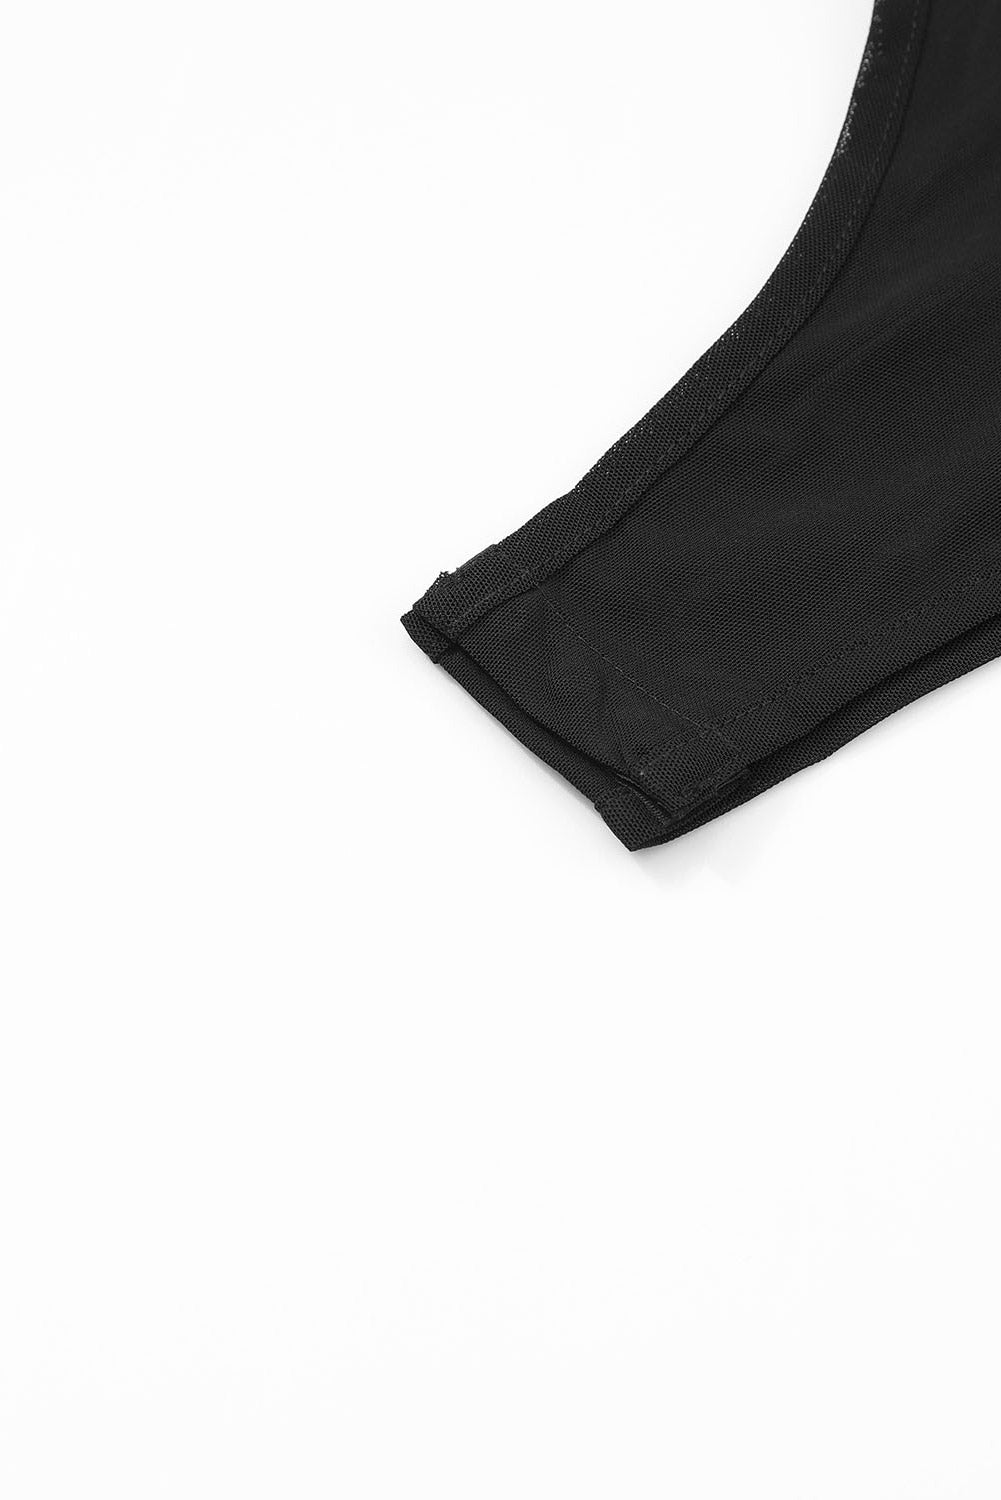 Black Rhinestone Embellished Mesh Long Sleeve Bodysuit